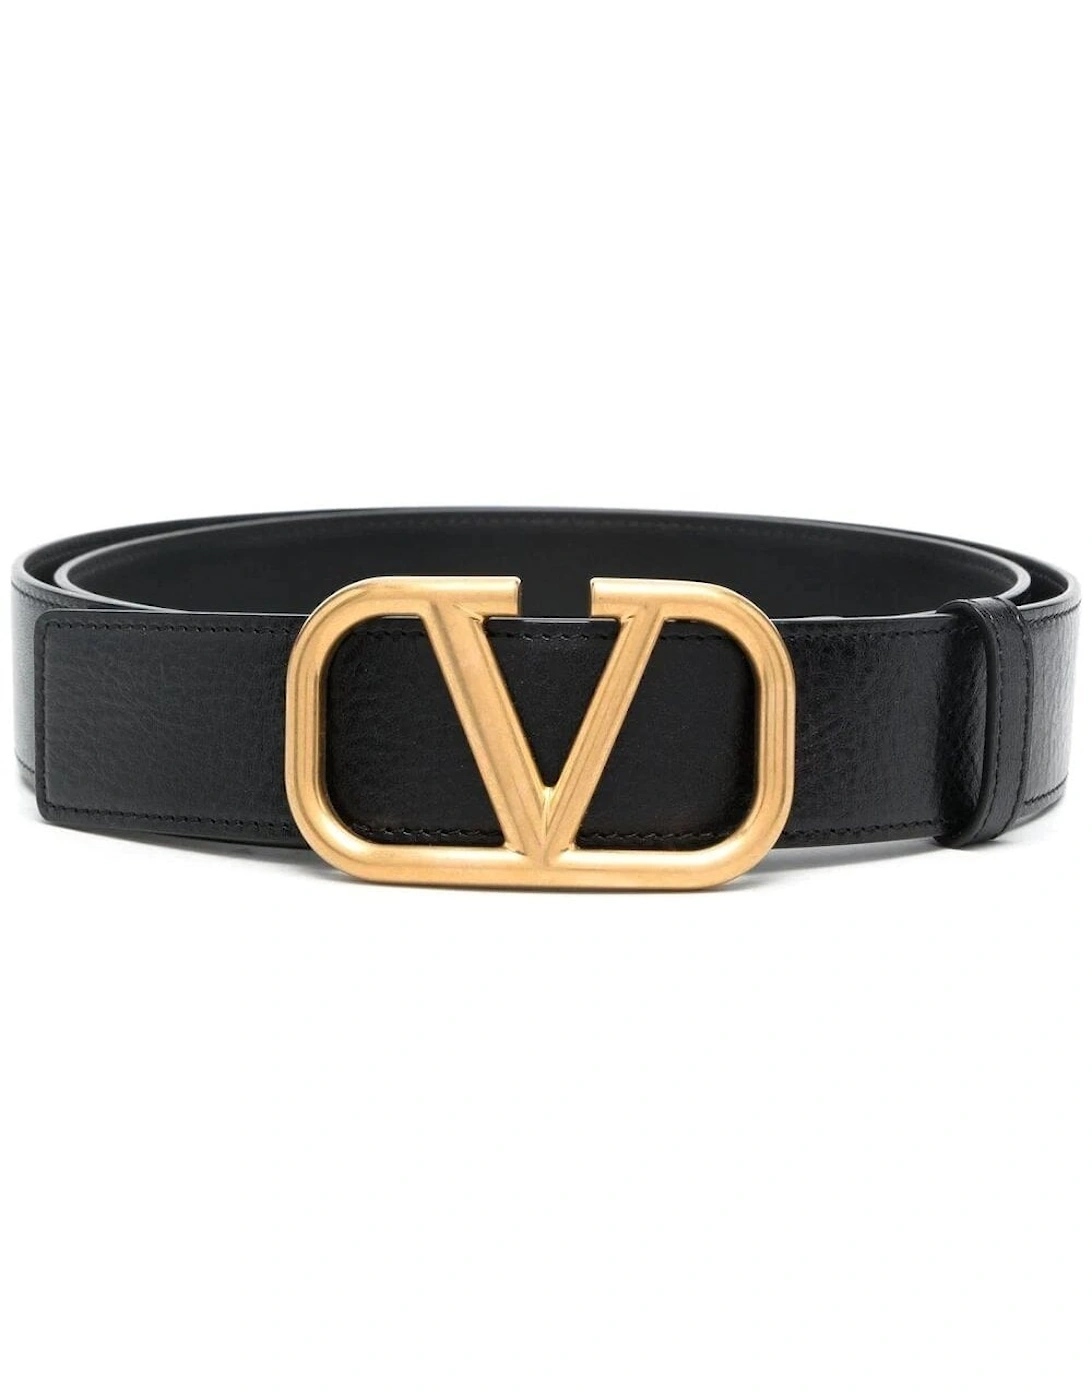 V-Logo leather belt, 3 of 2